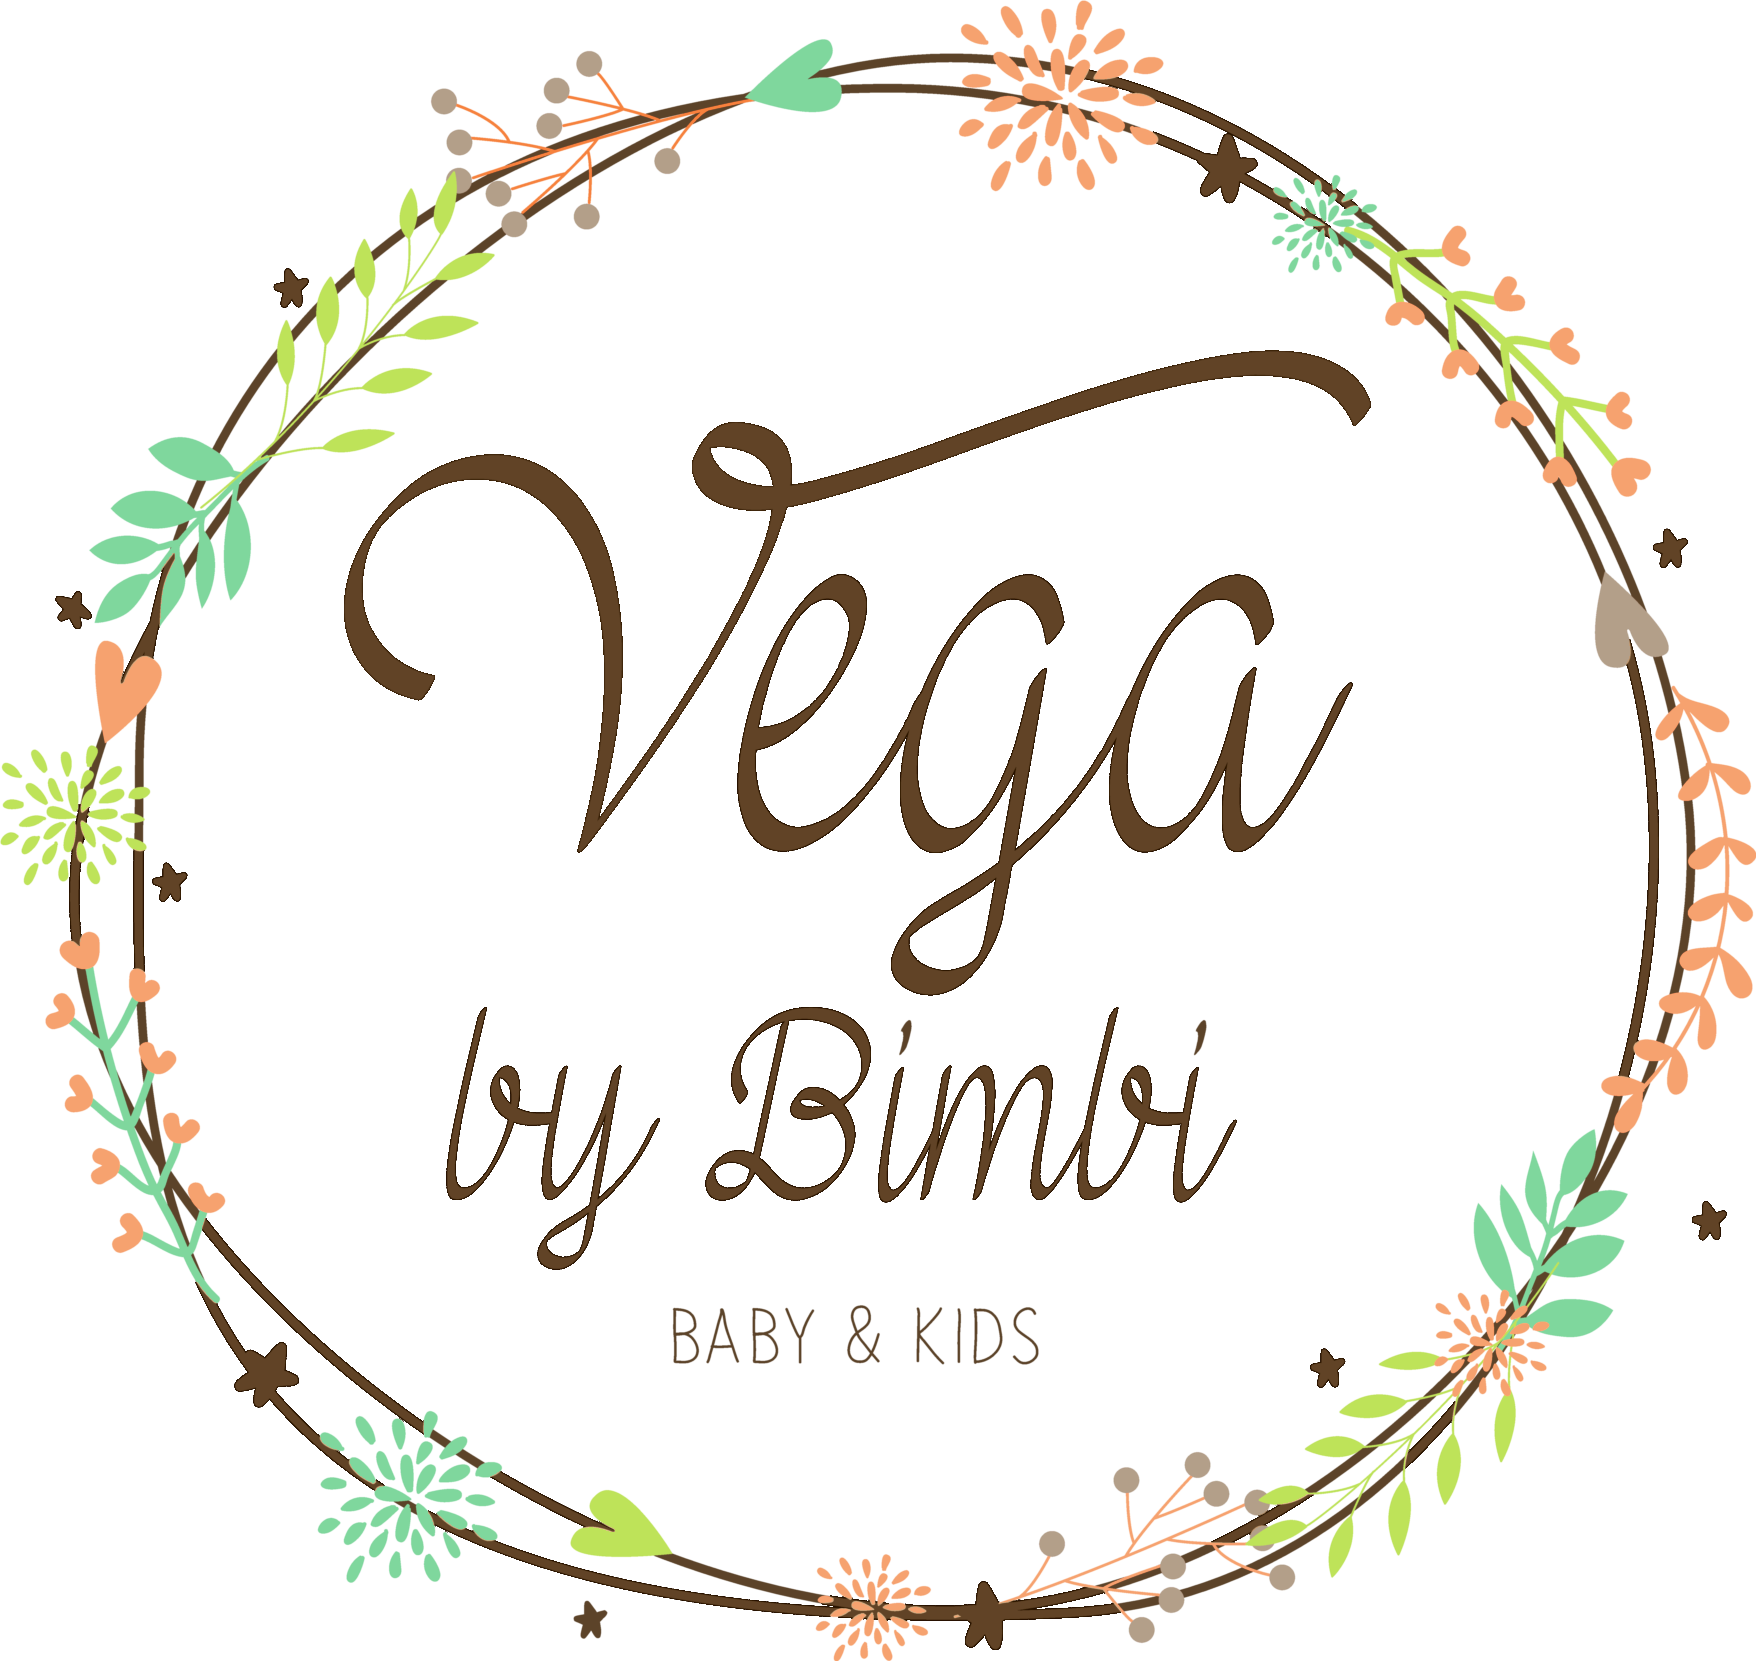 Vega By Bimbi